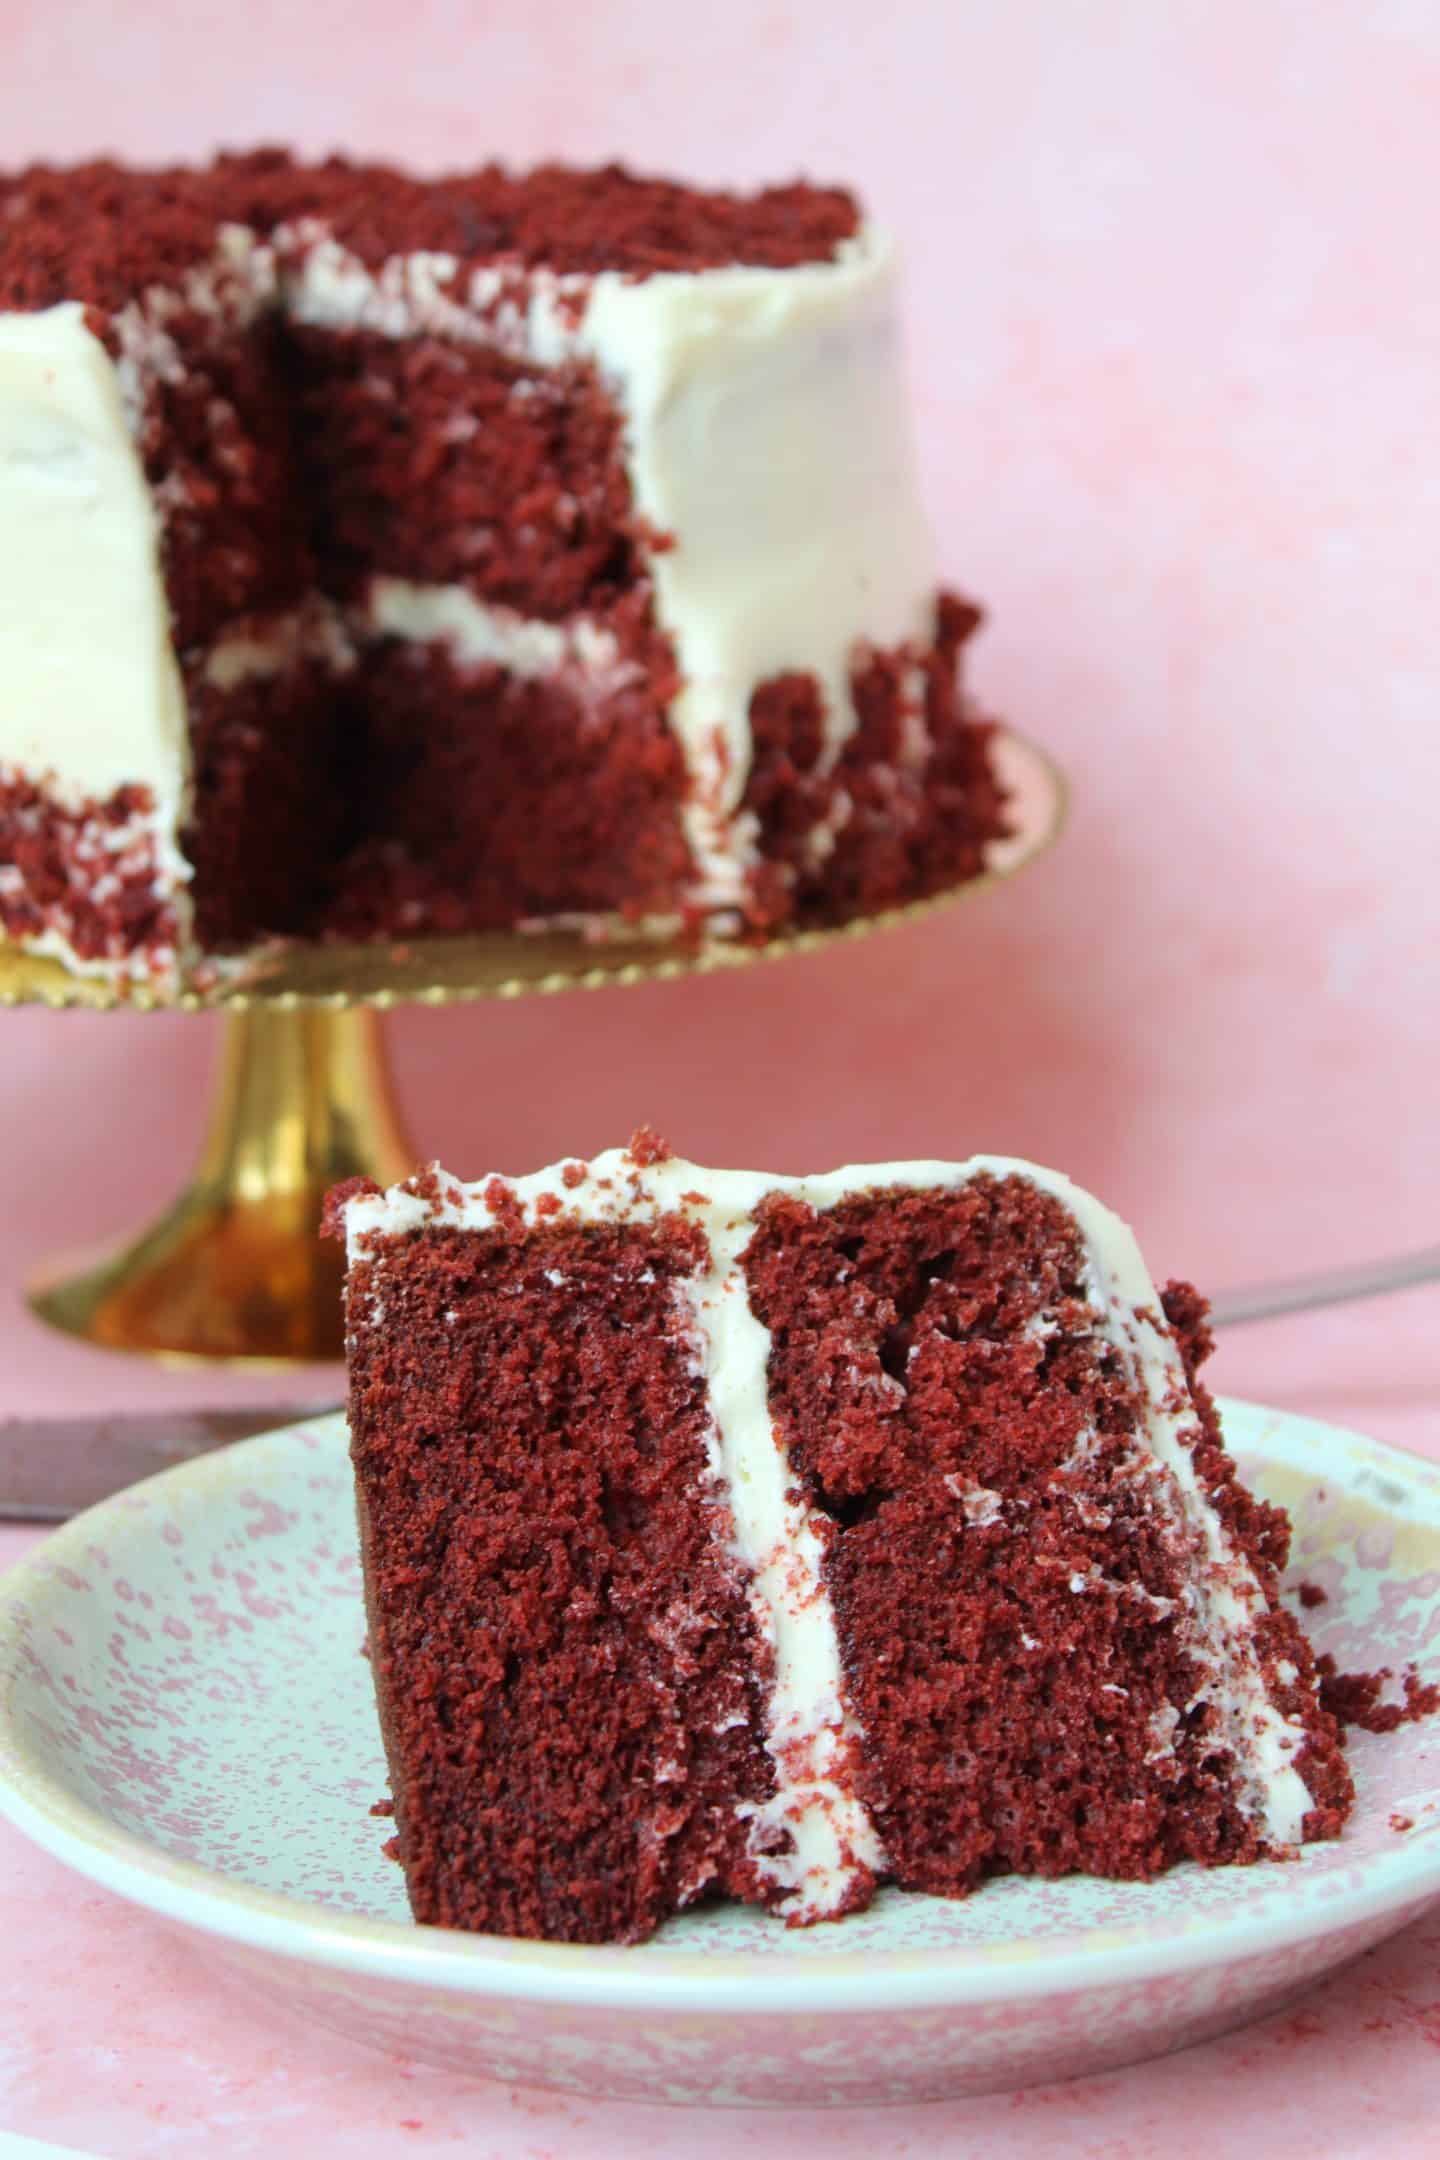 Gluten free red velvet cake recipe 